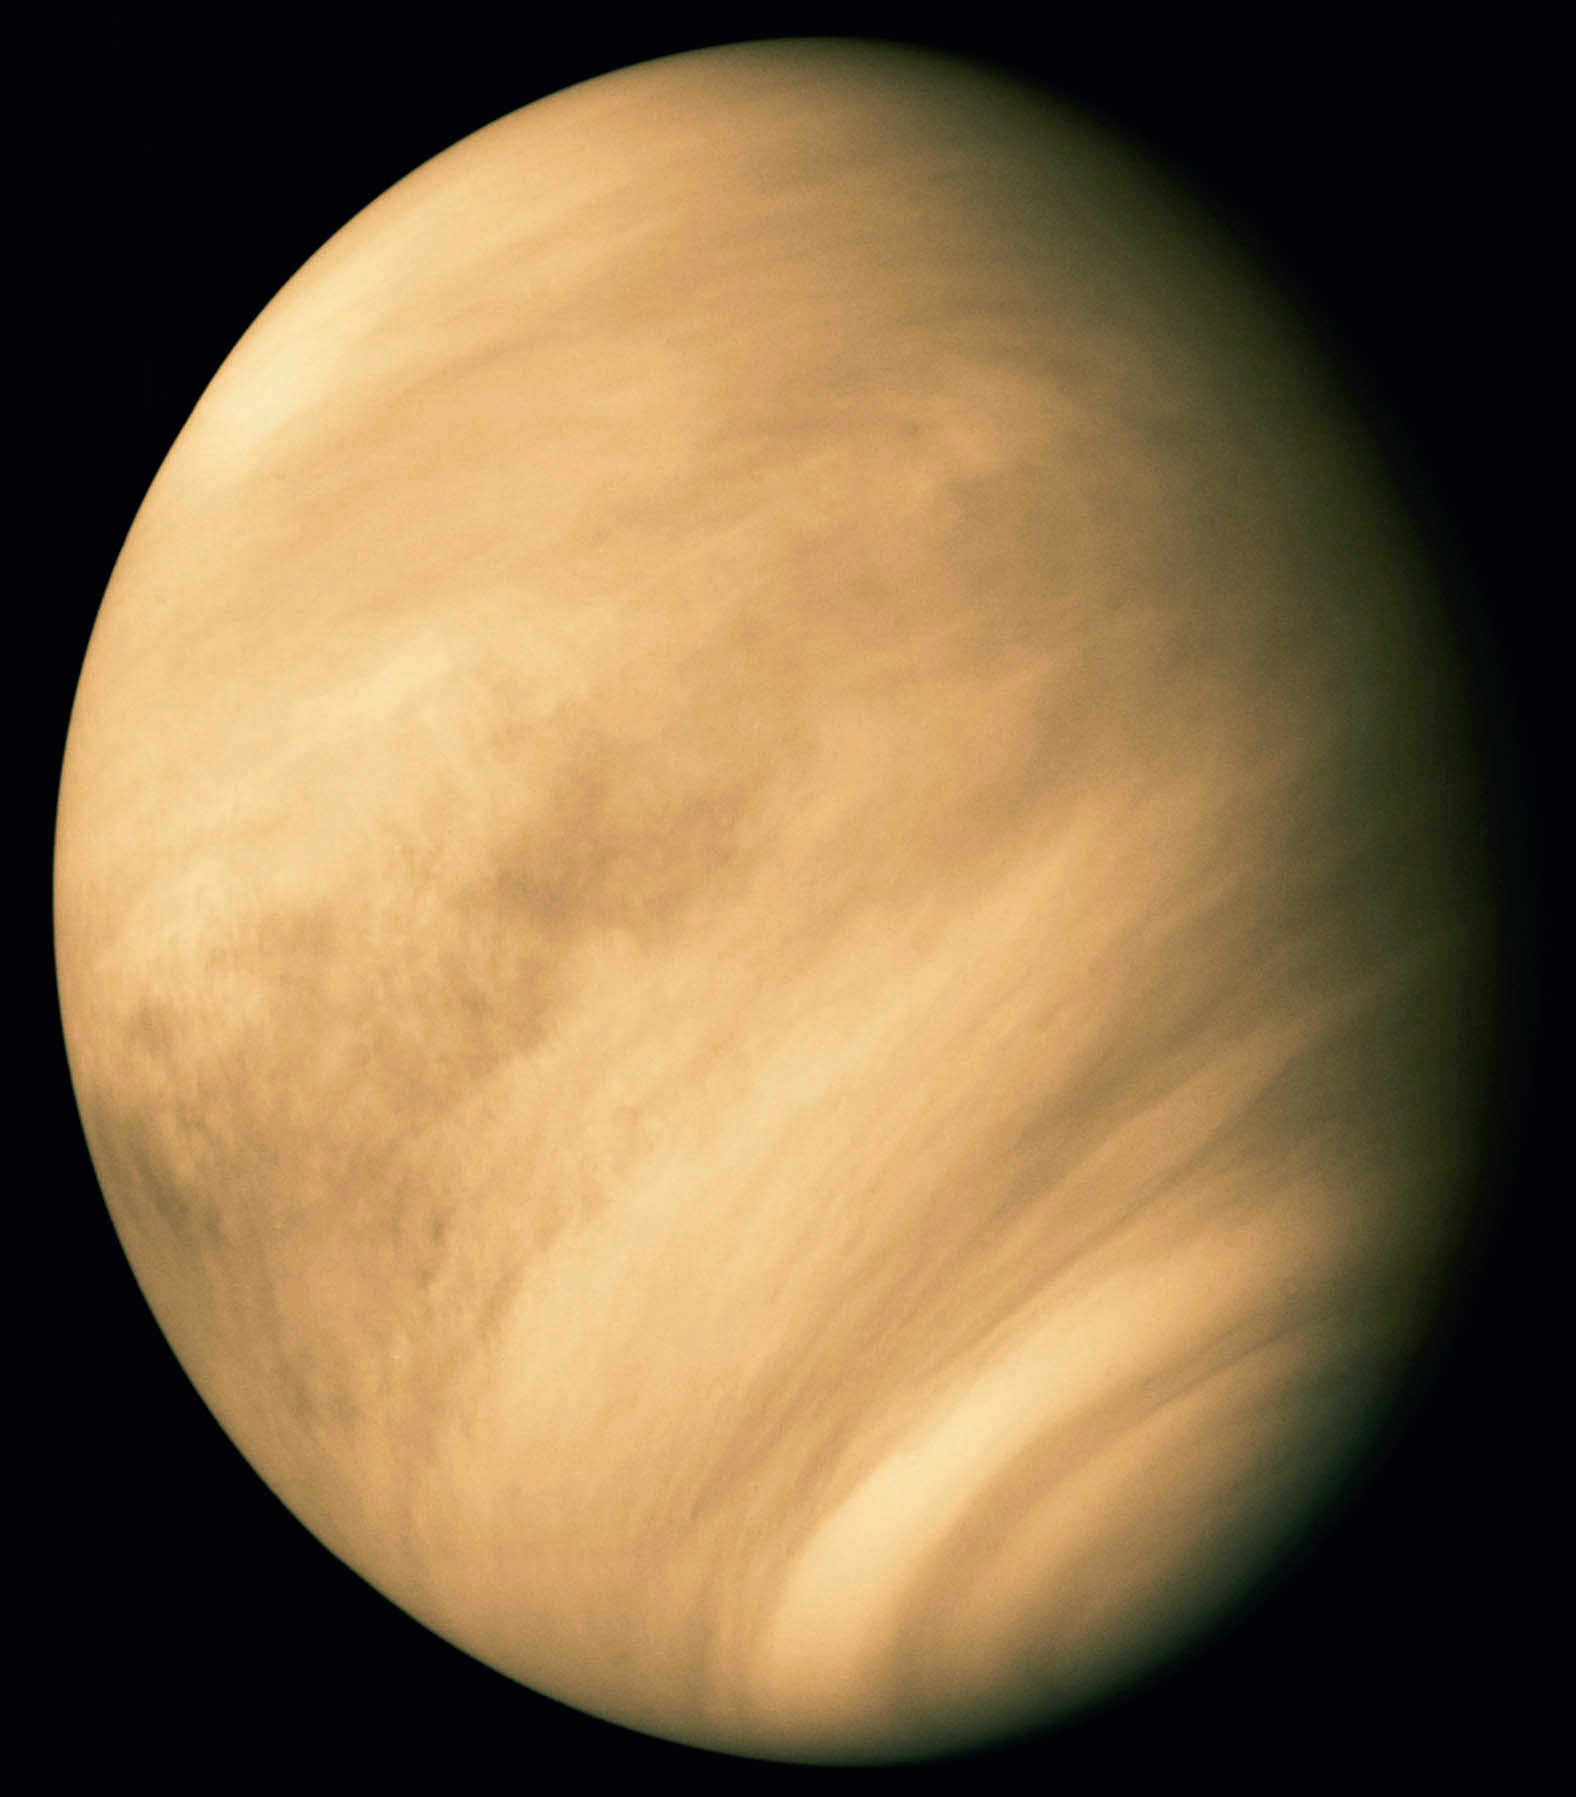 Vénus vue par la sonde américaine Mariner 10 en février 1974. Visuellement, les structures nuageuses ne sont pas très visibles depuis la Terre. Calvin J. Hamilton